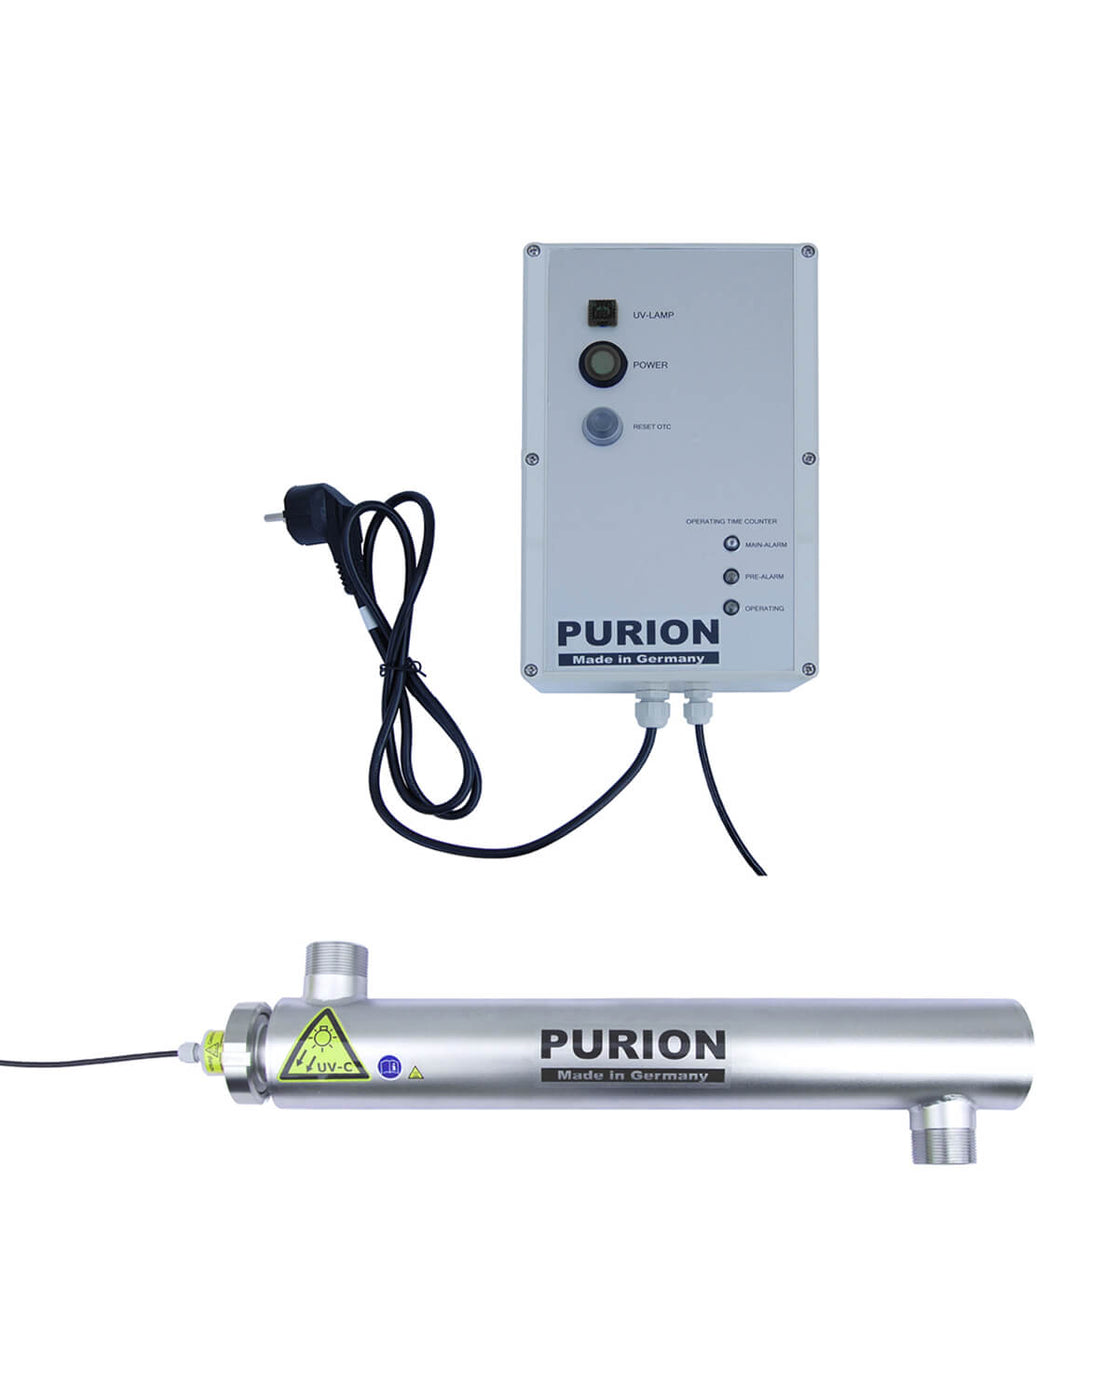 Das Produkt der Purion GmbH, der PURION 2001 OTC Plus, bietet UV-C-Desinfektion.